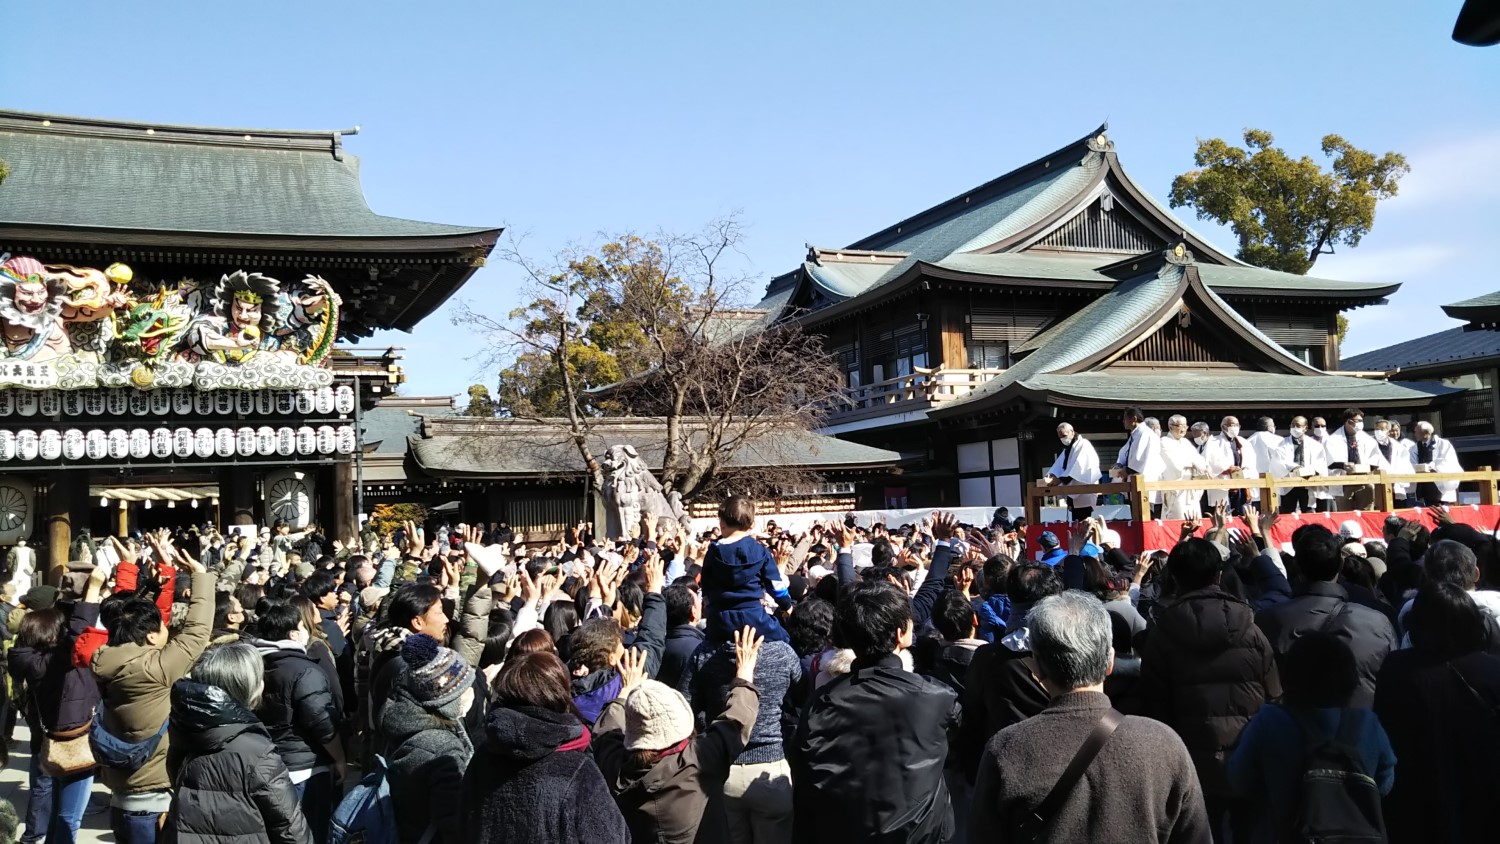 at Samukawa Shrine